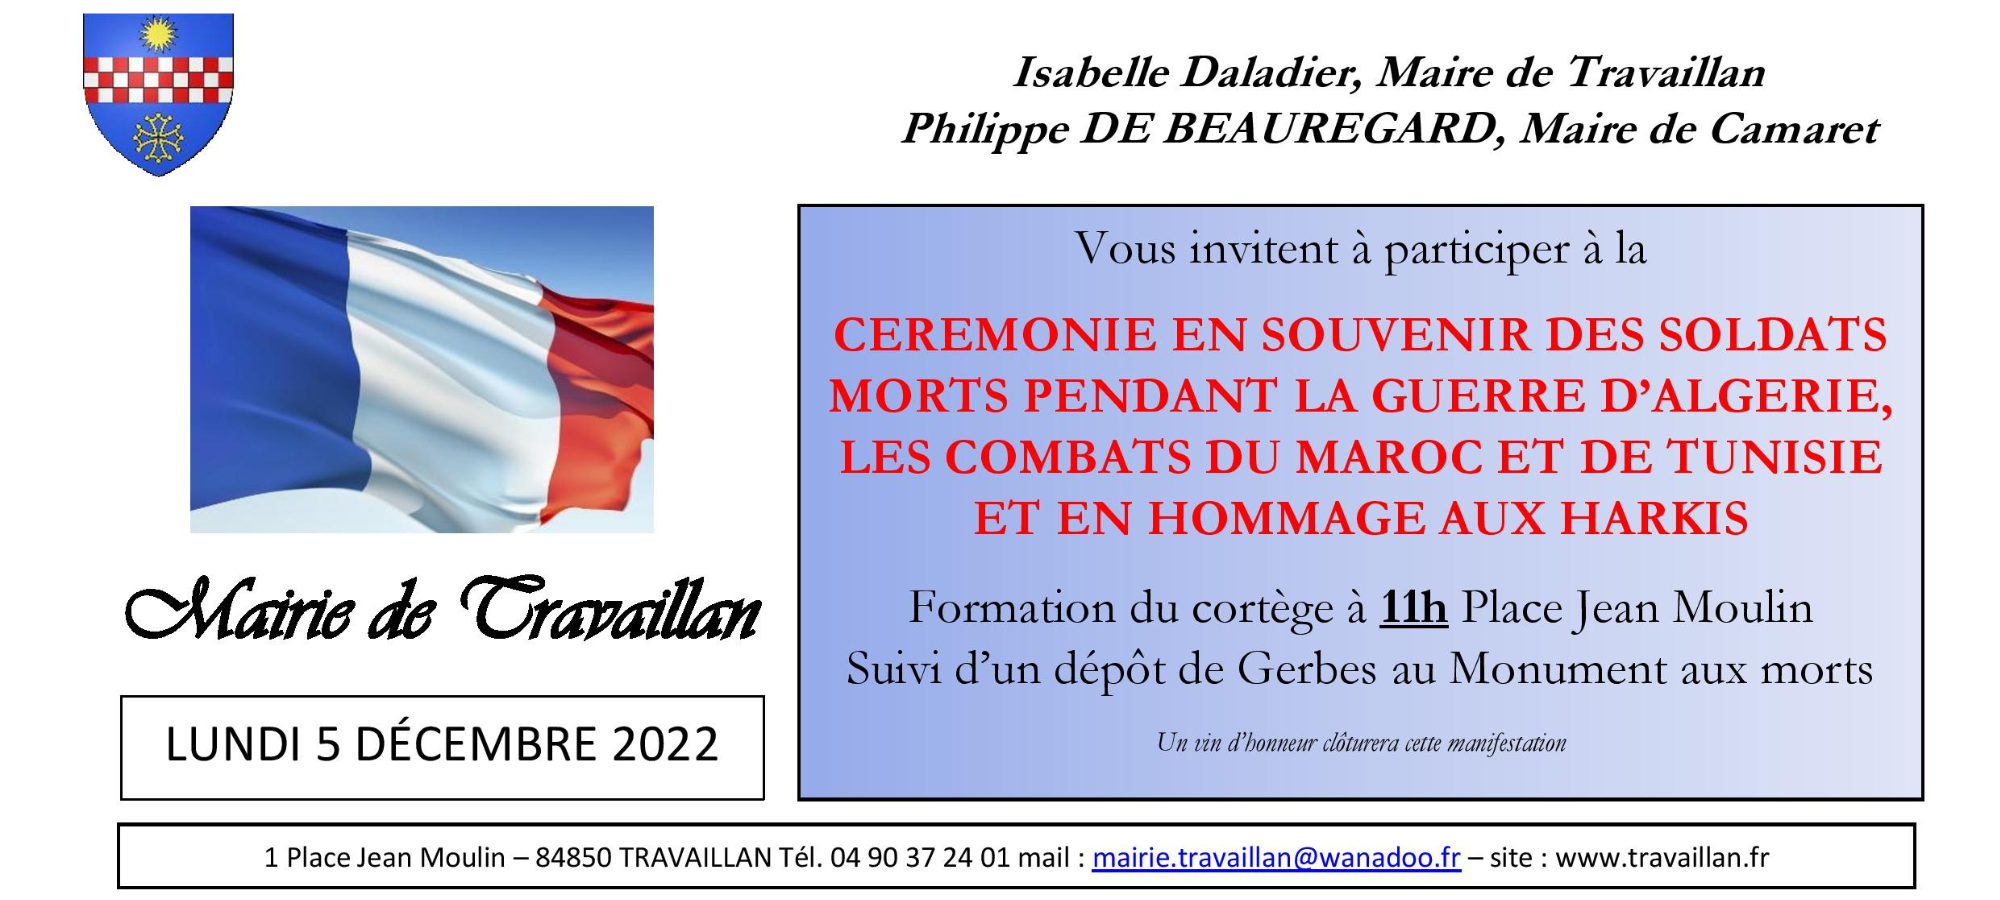 Journée nationale d'Hommage aux Harkis et aux « Morts pour la France » pendant la guerre d'Algérie et les combats du Maroc et de Tunisie ce lundi 5 décembre 2022 à Travaillan